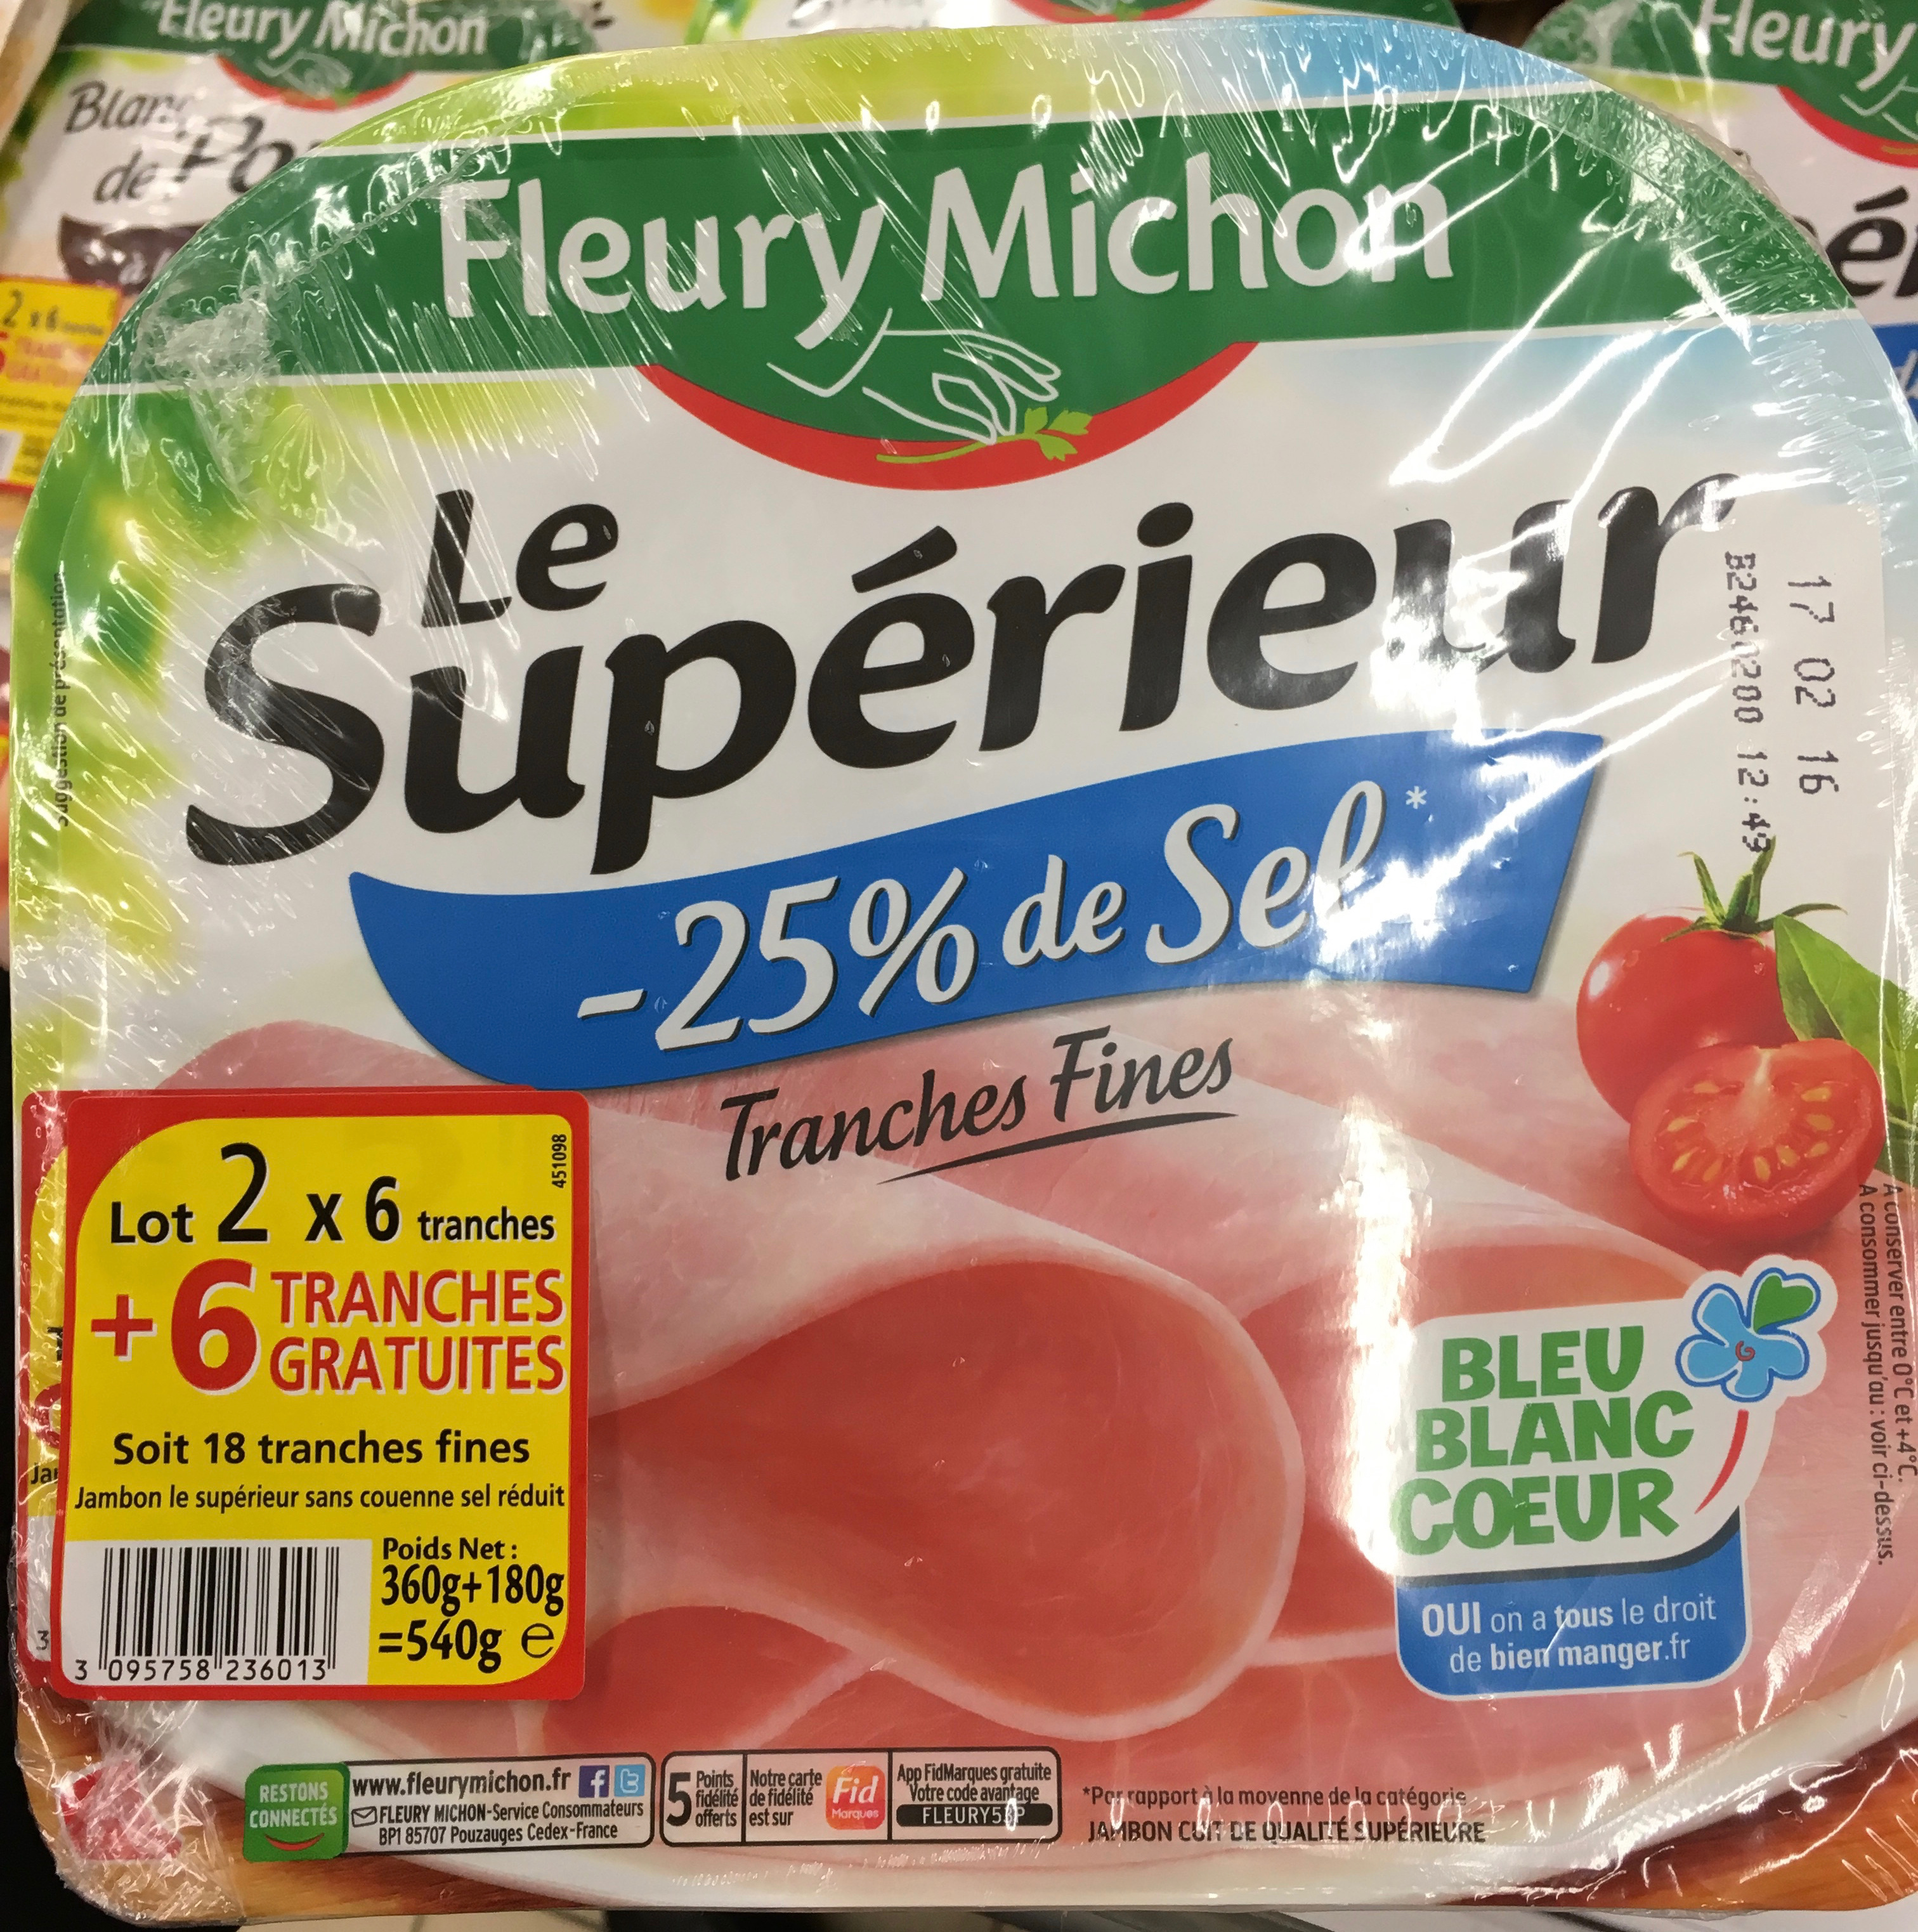 Le Supérieur -25% de Sel (lot 2x6+8 tranches) - Product - fr